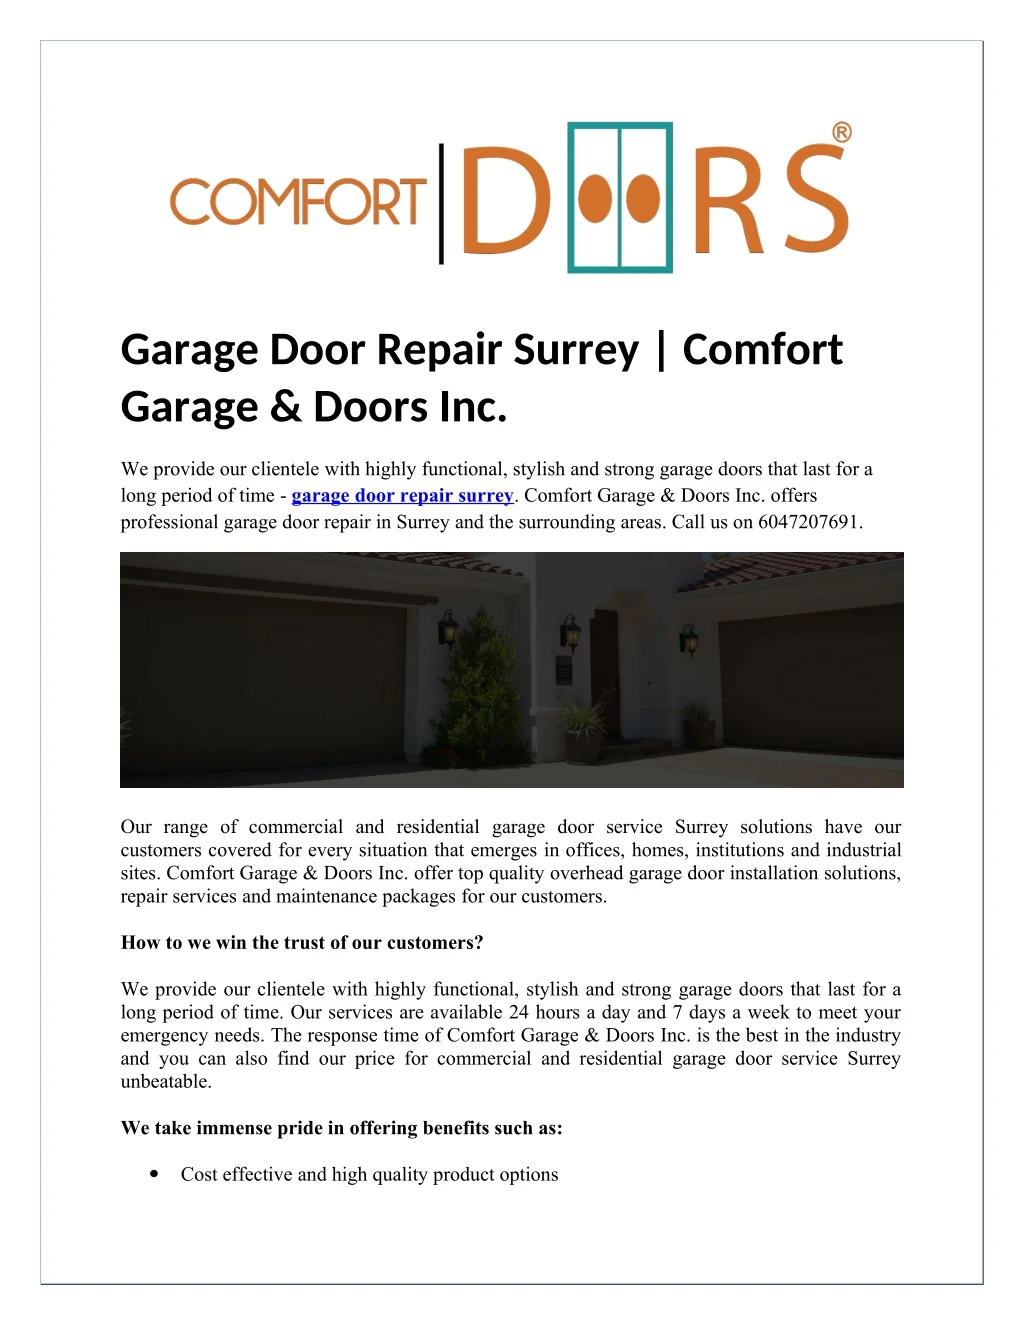 garage door repair surrey comfort garage doors inc